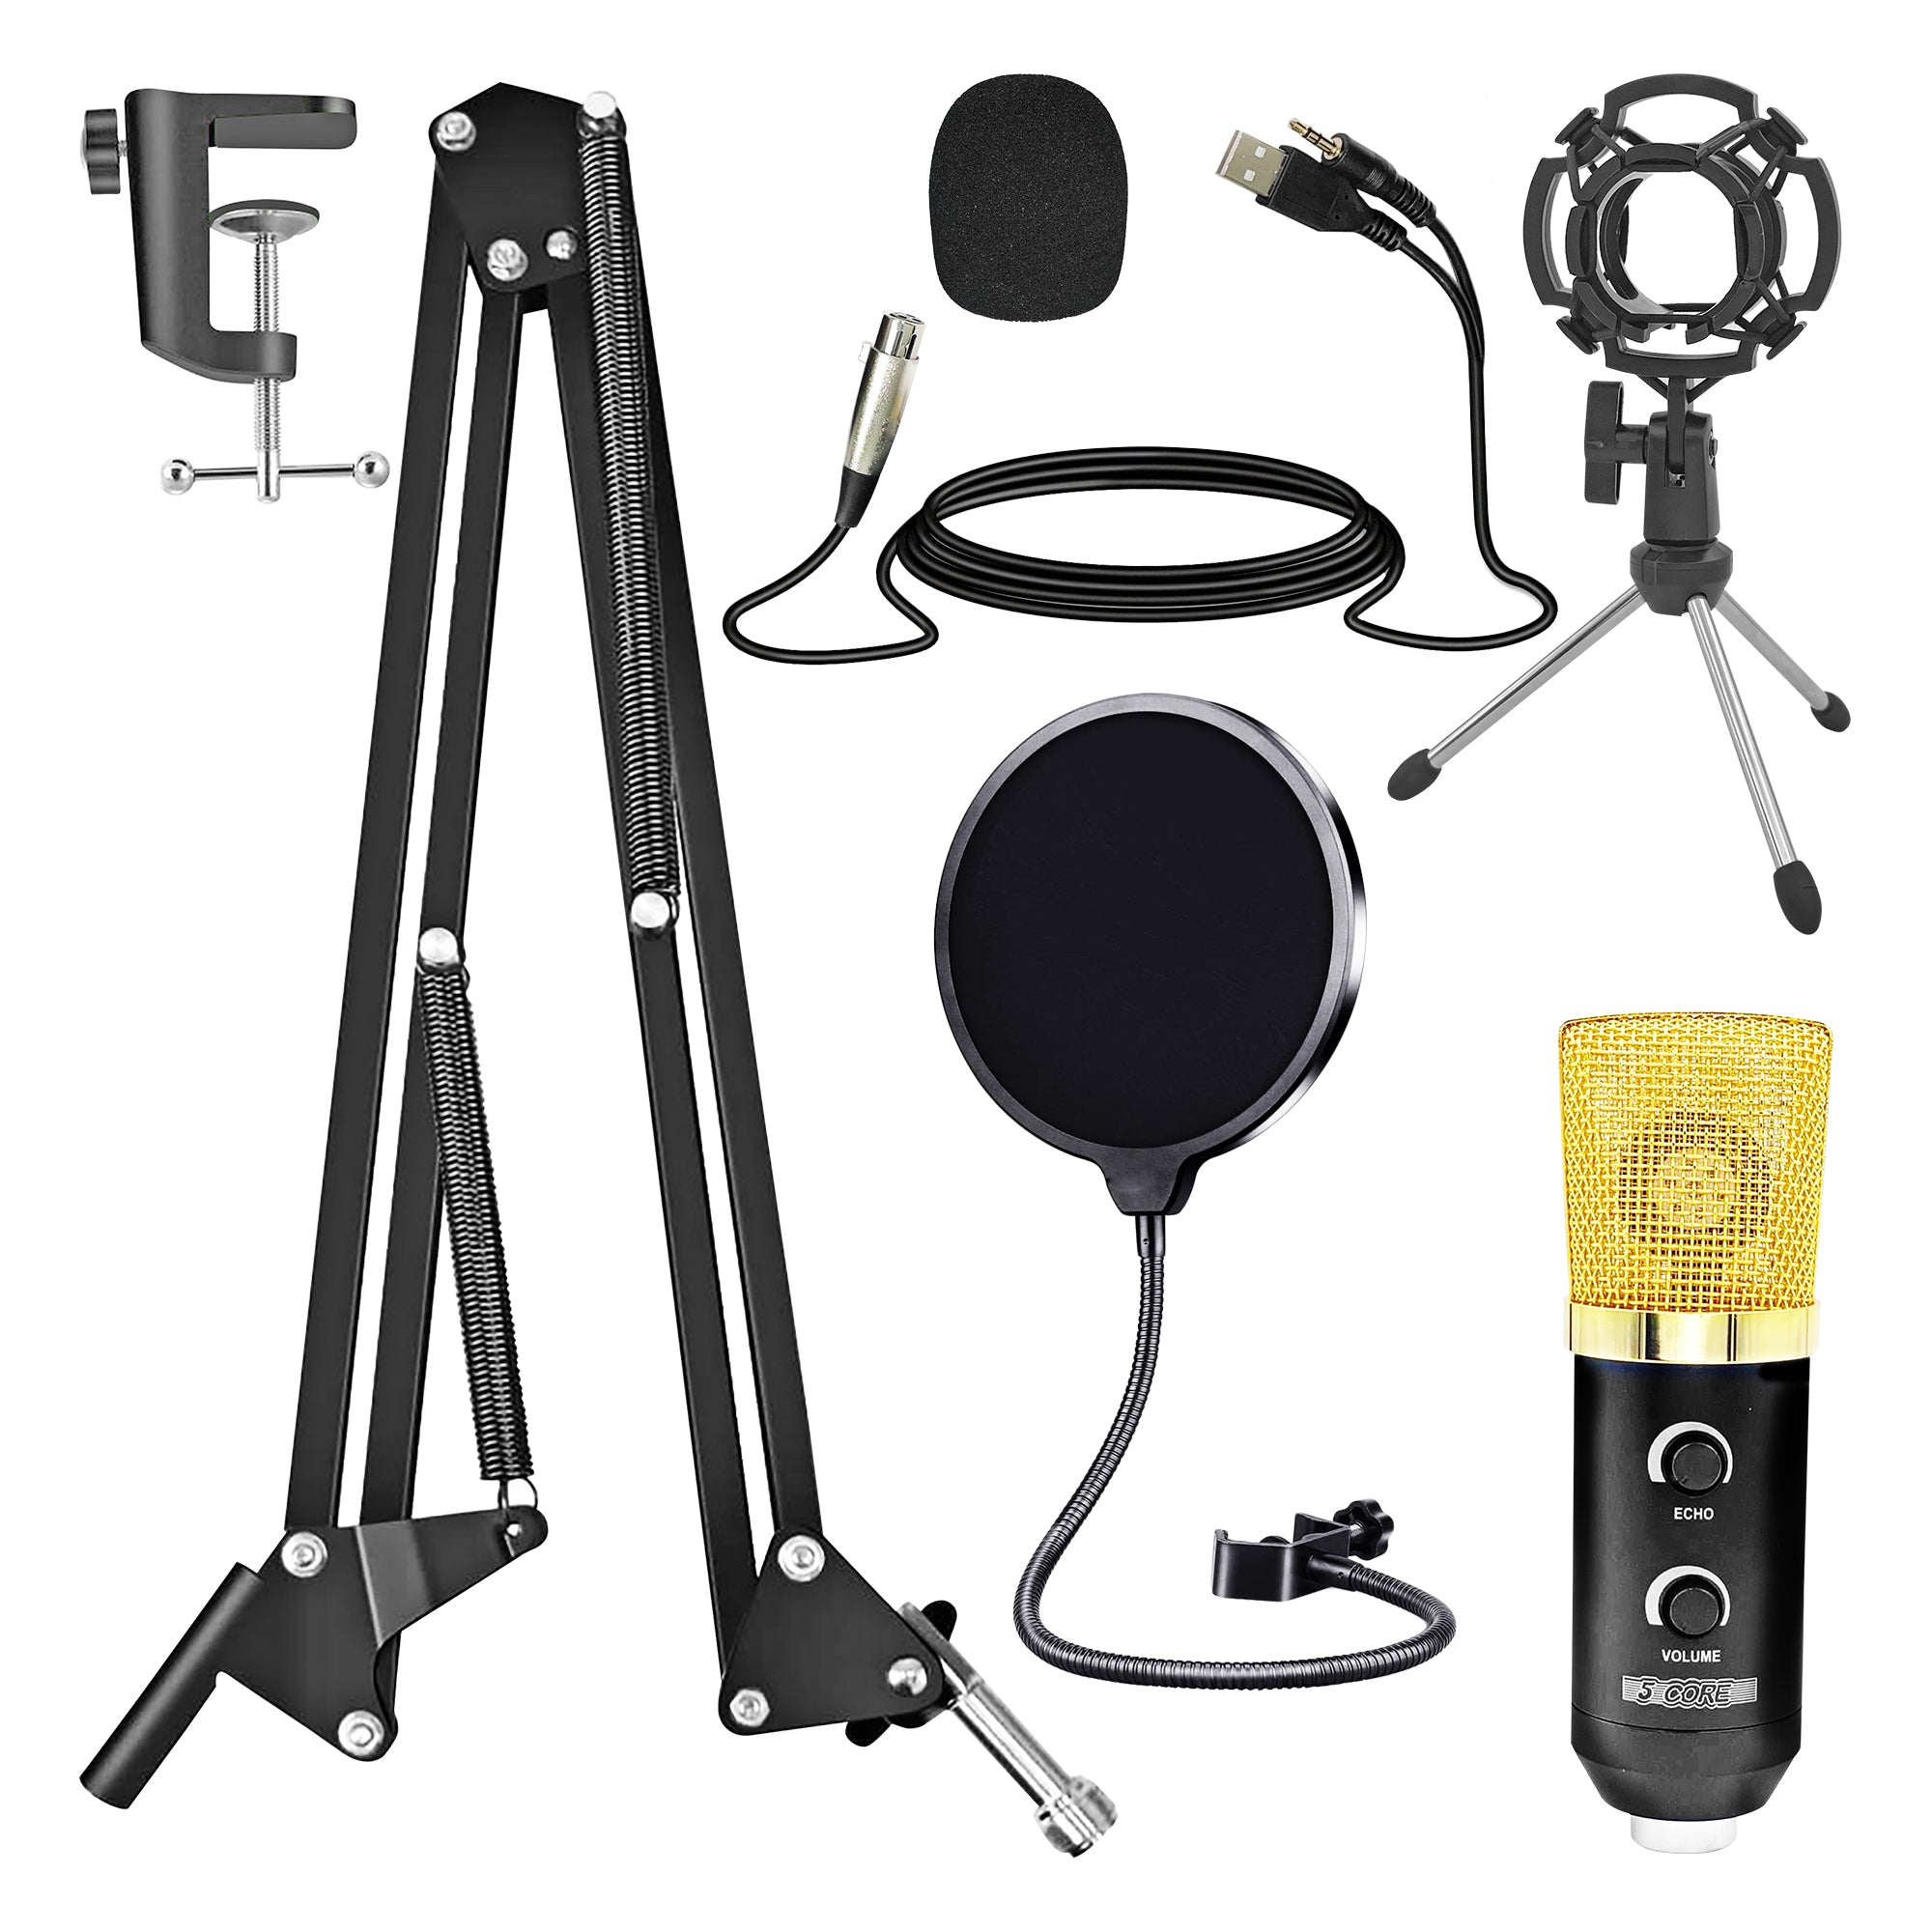 5 Core Studio Recording Kit Podcast Equipment Bundle Includes Recording Microphone Desk Arm Shock Mount Sponge XLR Cable Mini Tripod -RM 7 BG